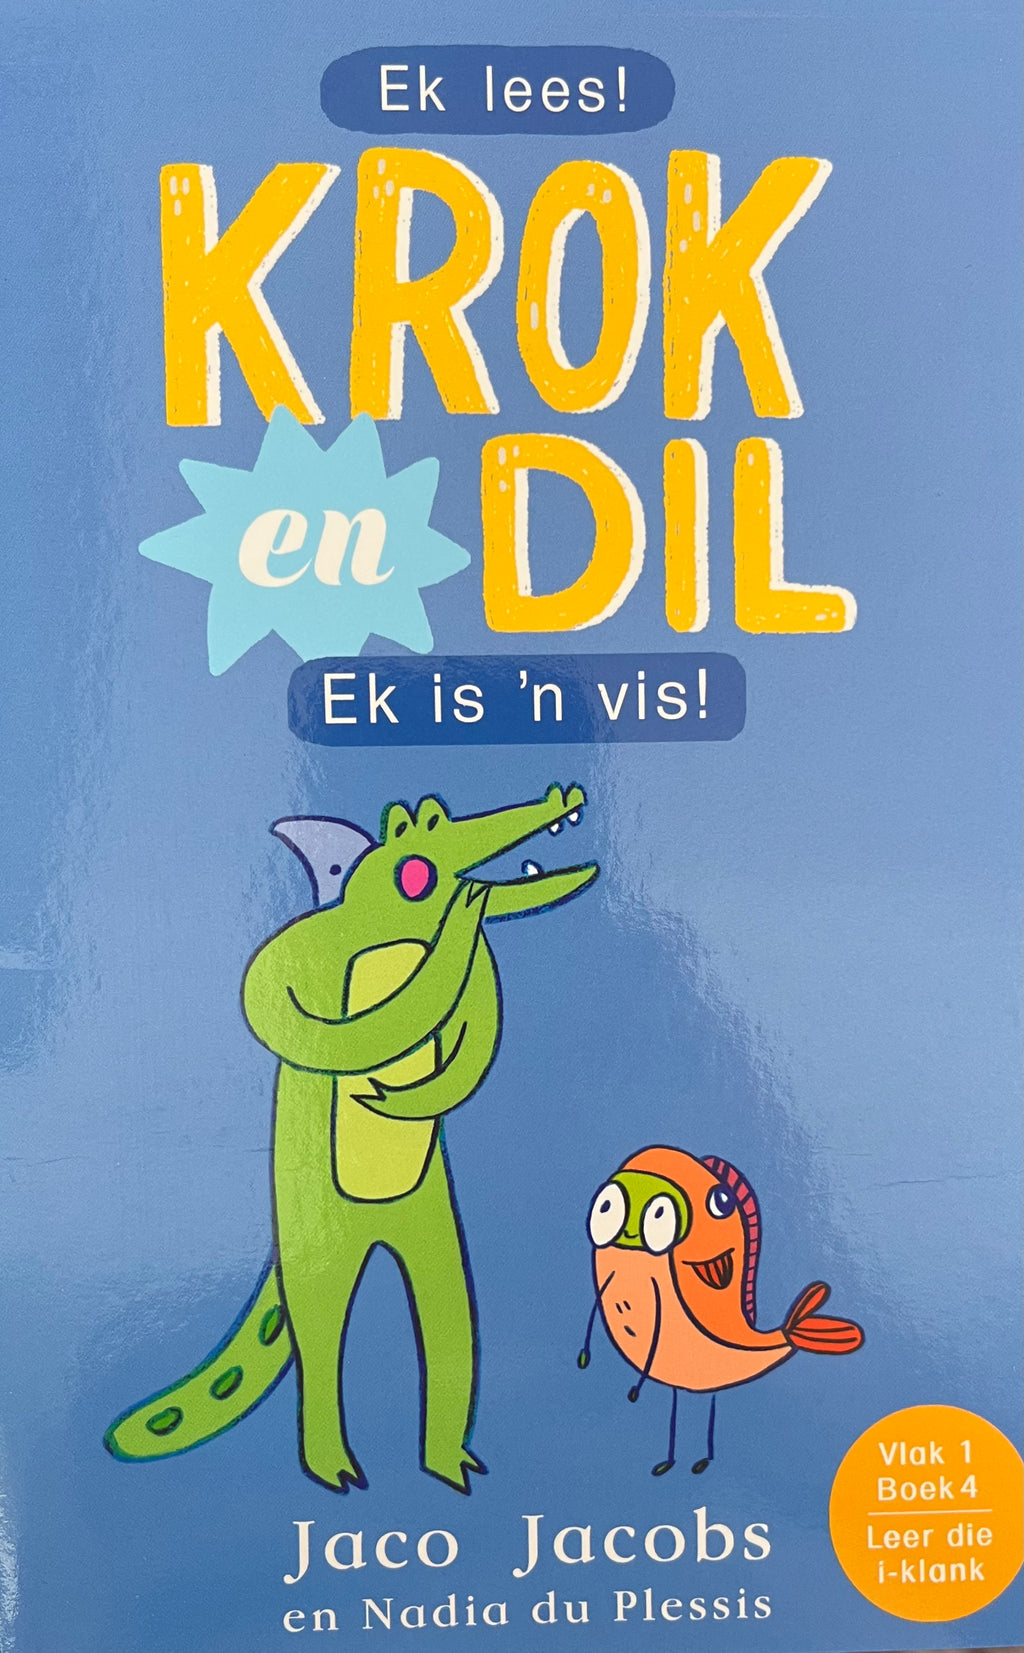 Ek Lees! Krok en Dil: Ek is 'n vis!